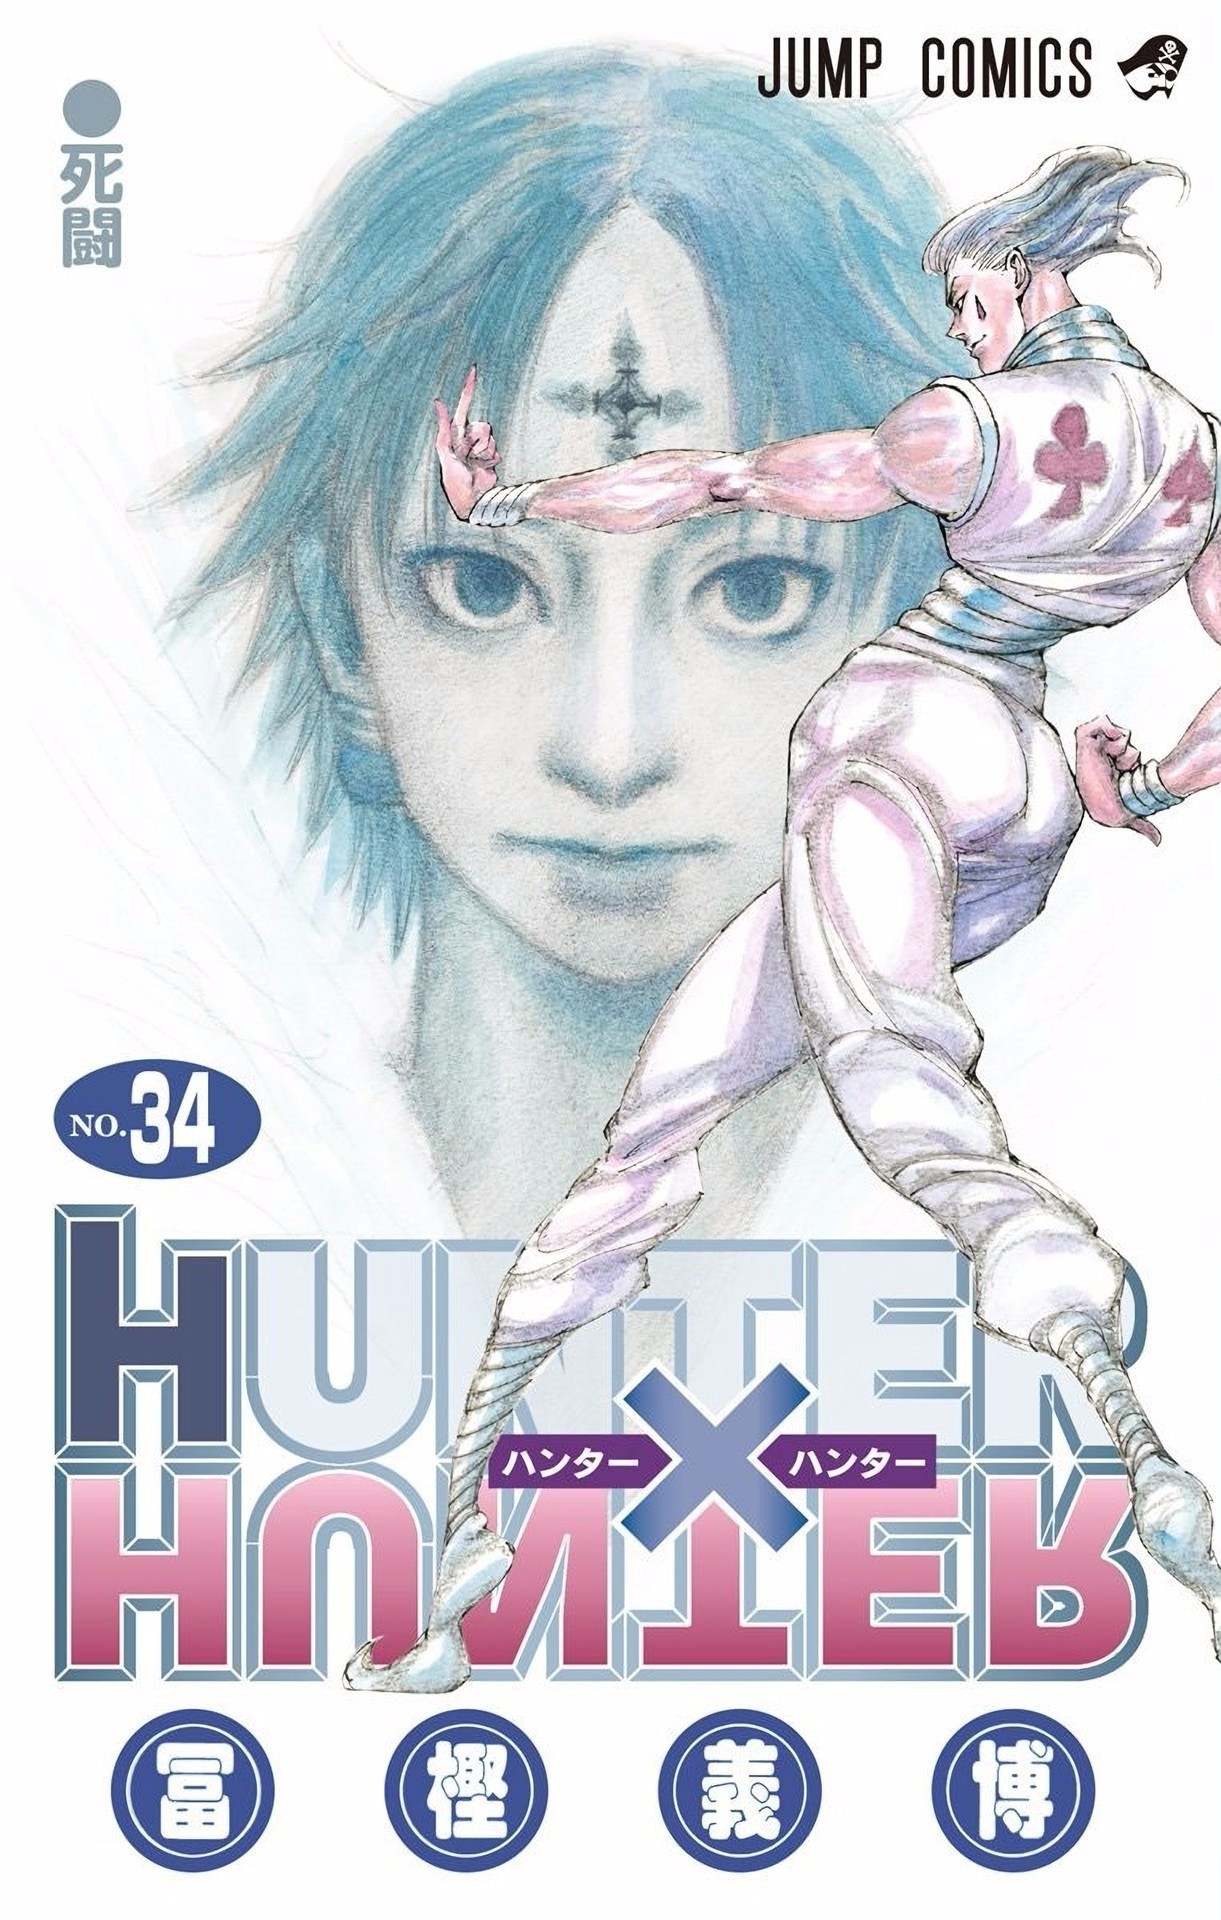 《全职猎人》第34卷发售首周销量为868650部,高居漫画销量第1名